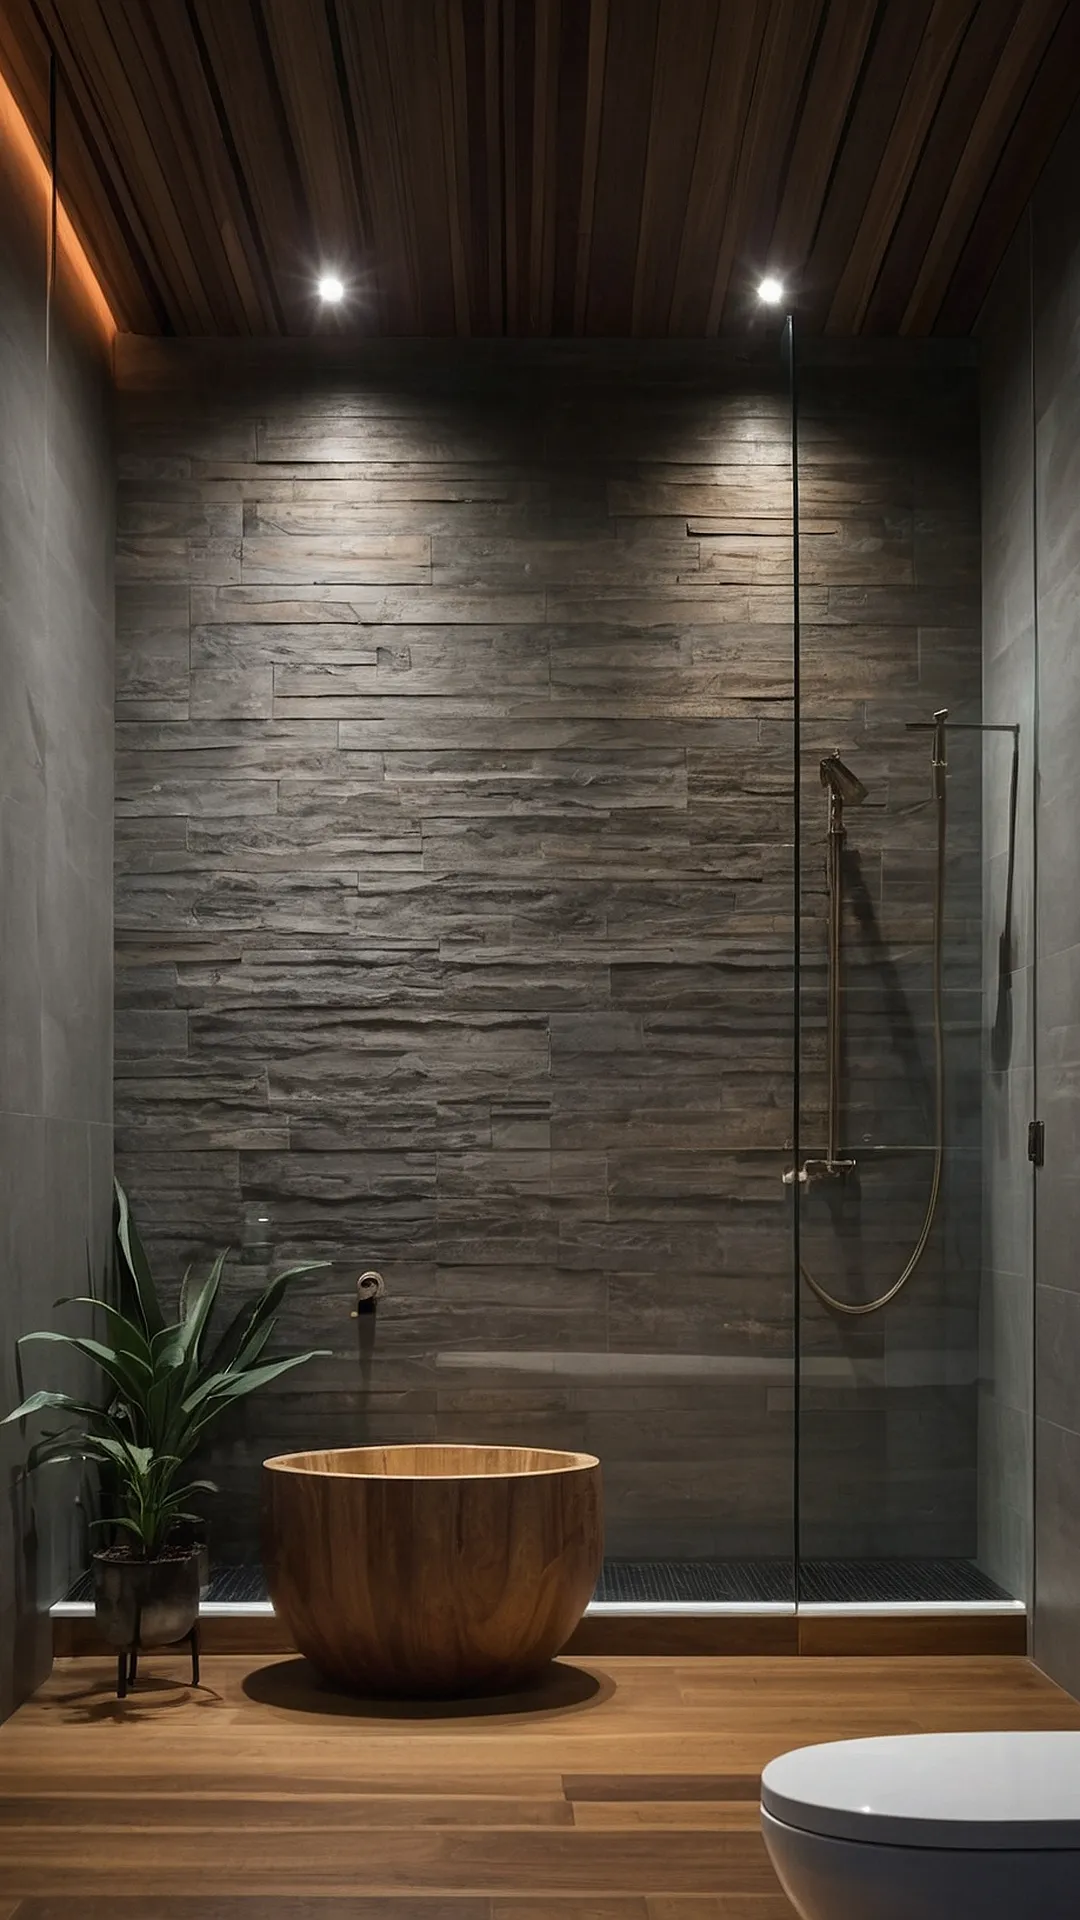 Zen and Zest: Contemporary Bathroom Styles